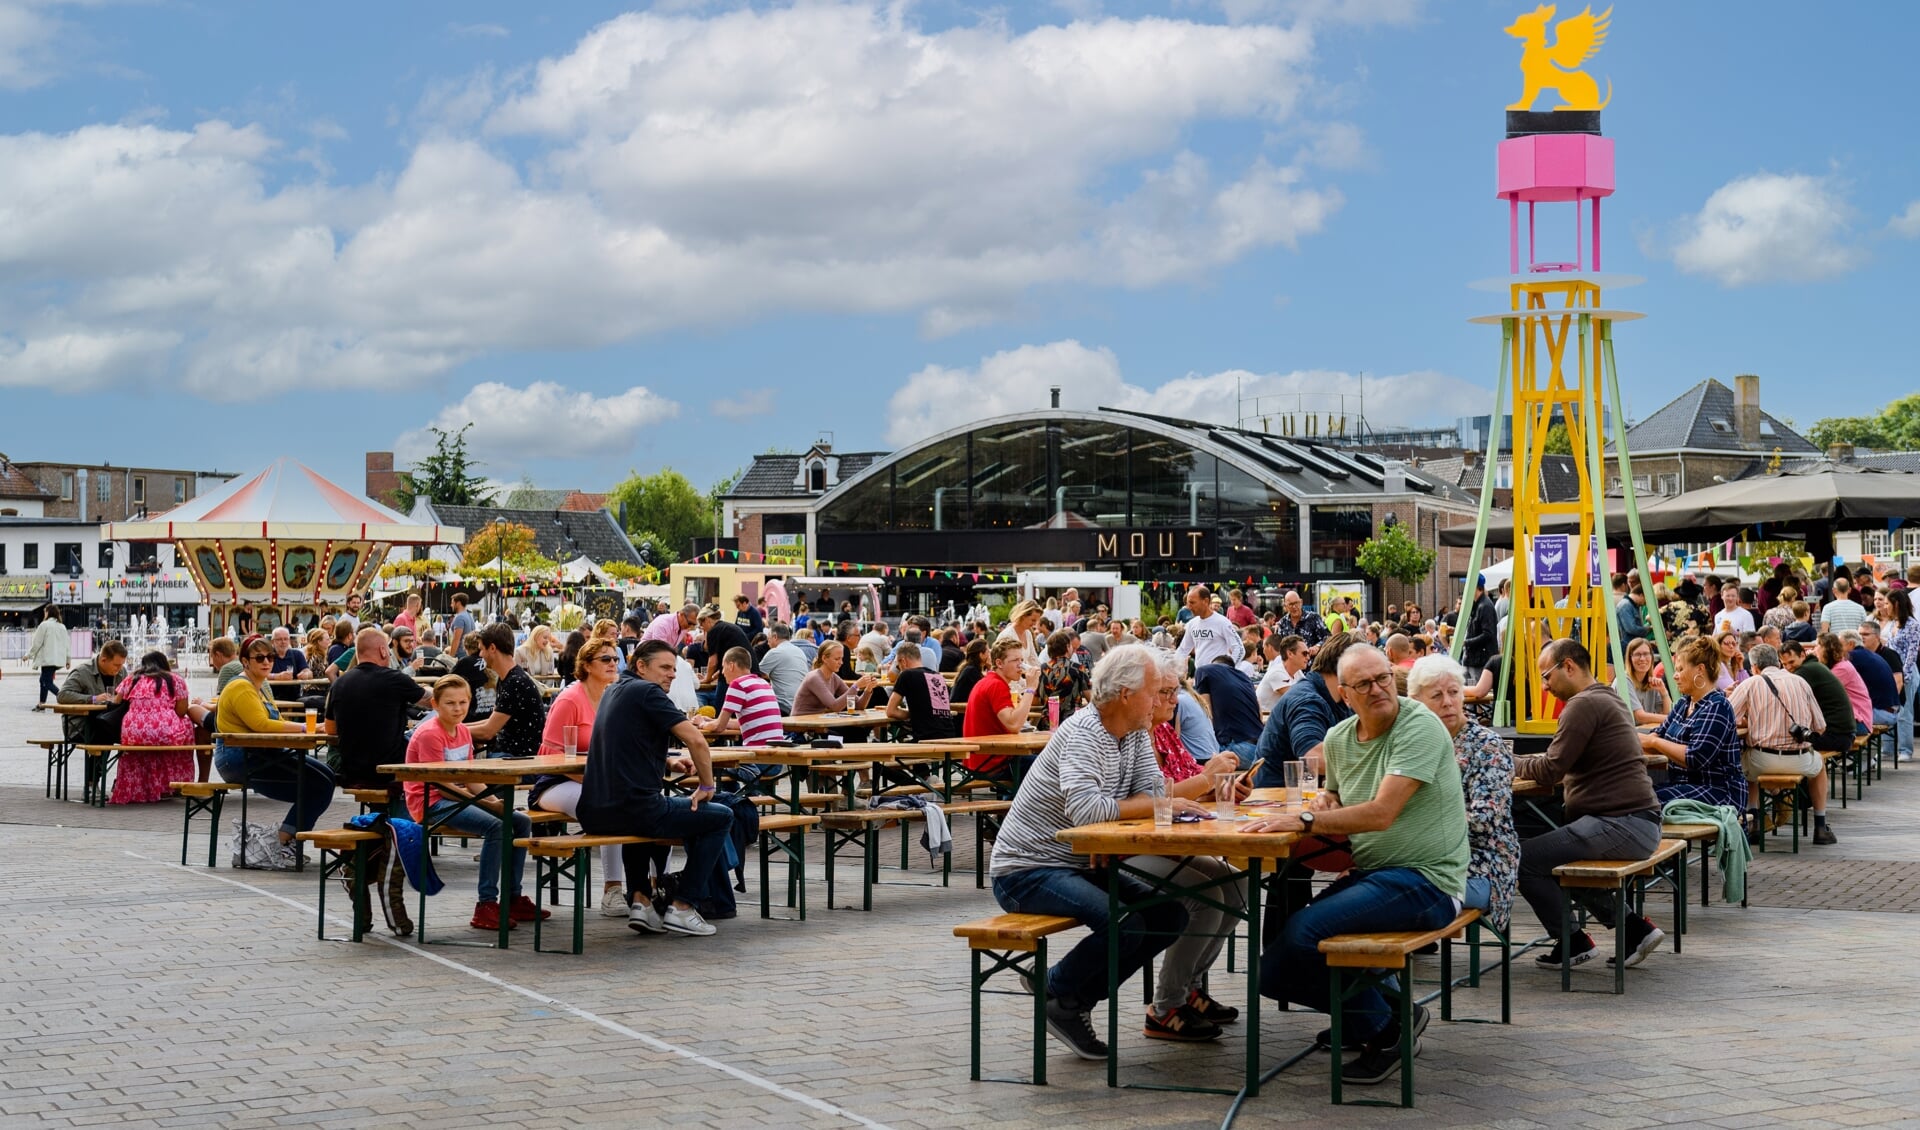 Gooisch Bierfestival, Marktplein